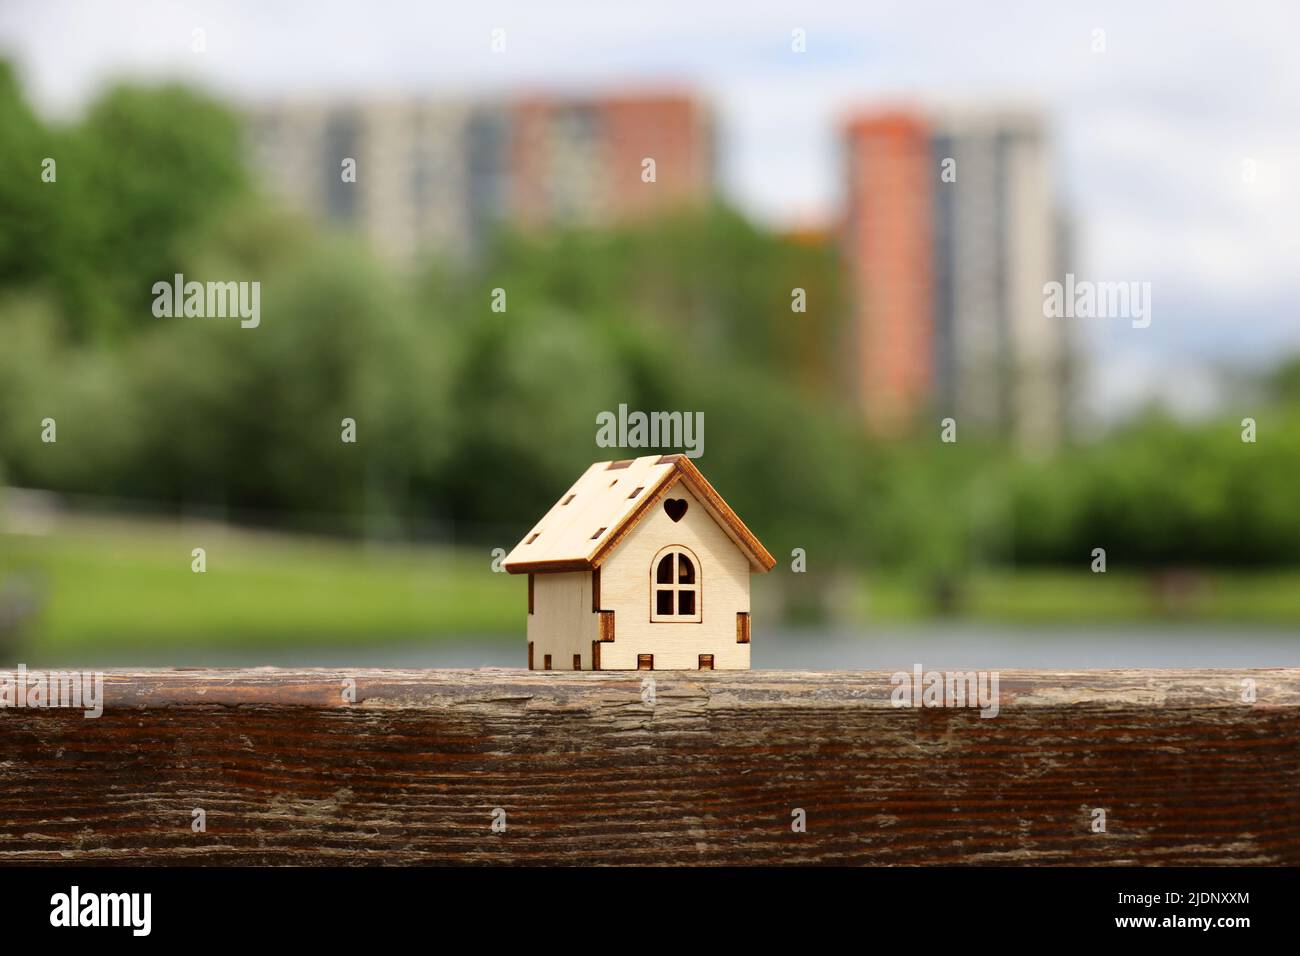 Modello di casa in legno sullo sfondo del lago estivo e alti edifici residenziali. Concetto di casolare di campagna, immobiliare in zona ecologica Foto Stock